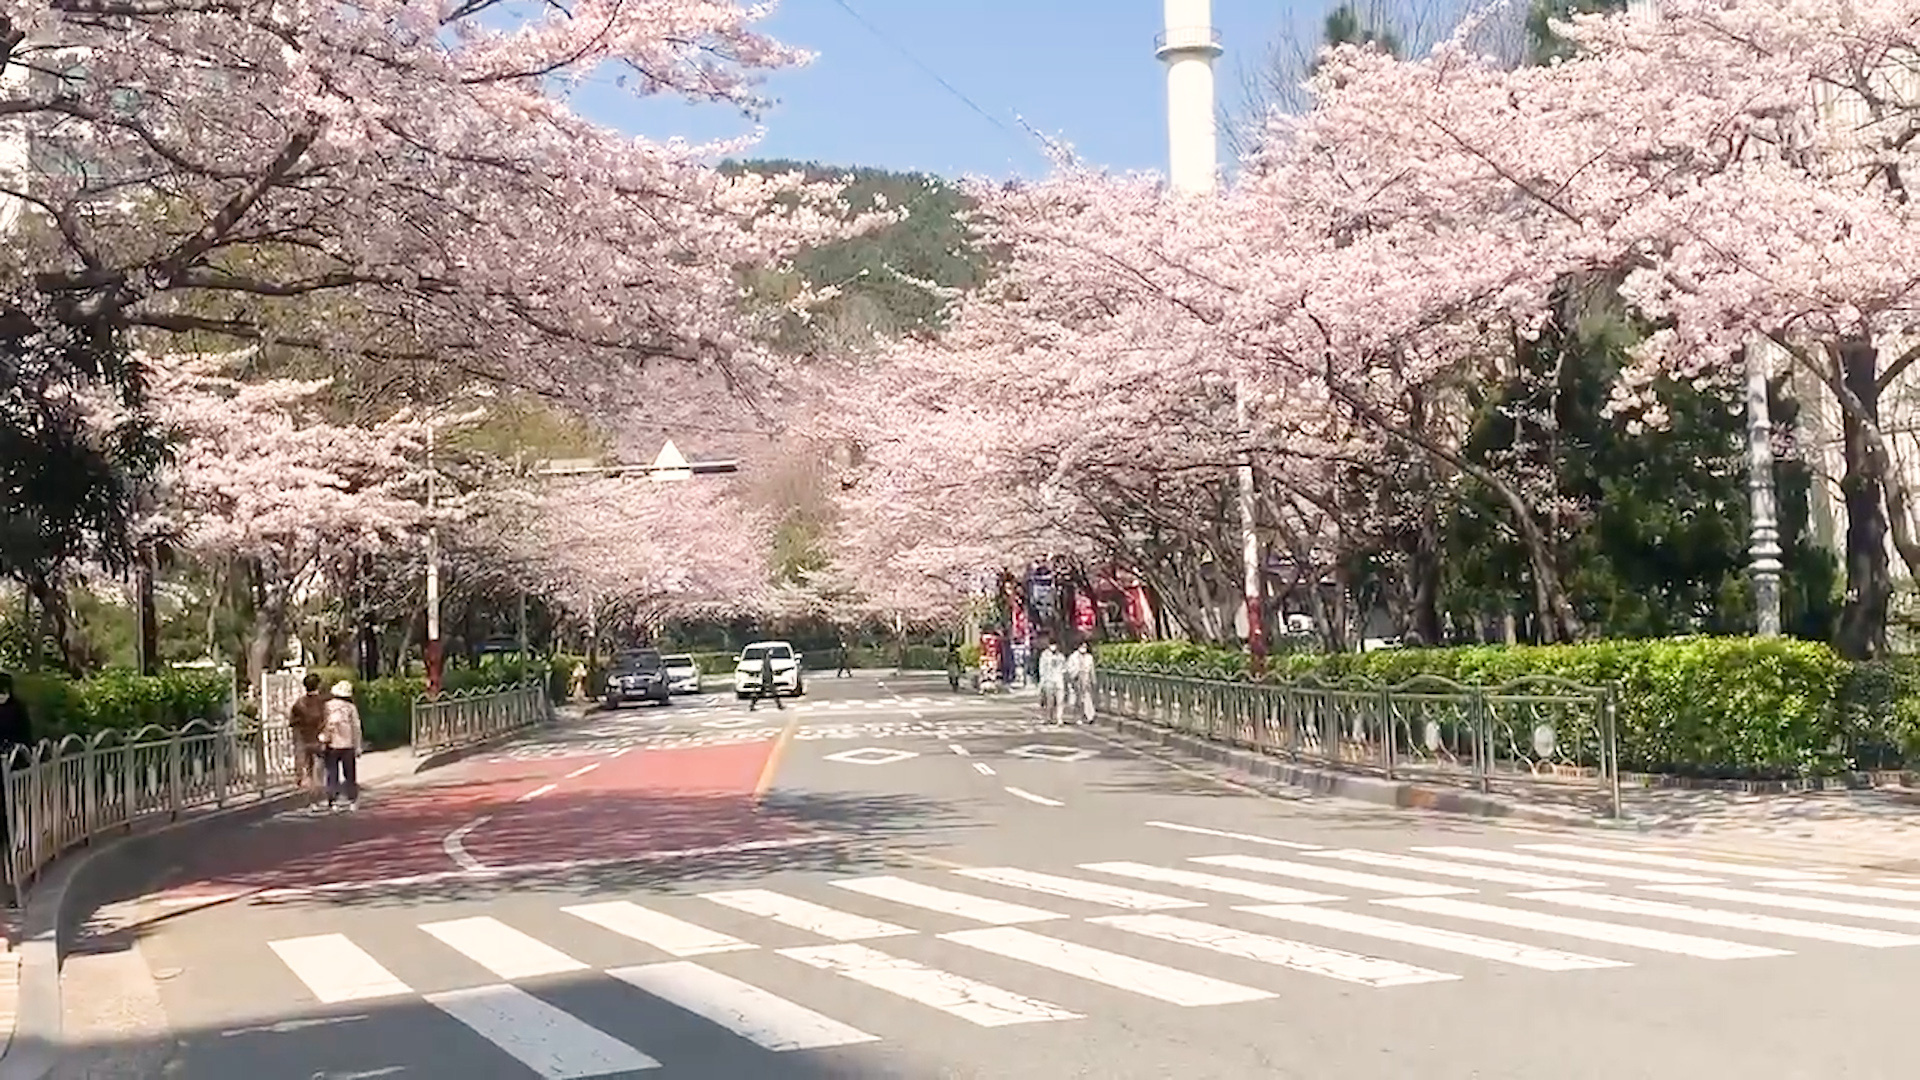 Đường phố vắng lặng khi Hàn Quốc hủy bỏ lễ hội hoa anh đào trên khắp đất nước - Ảnh 2.